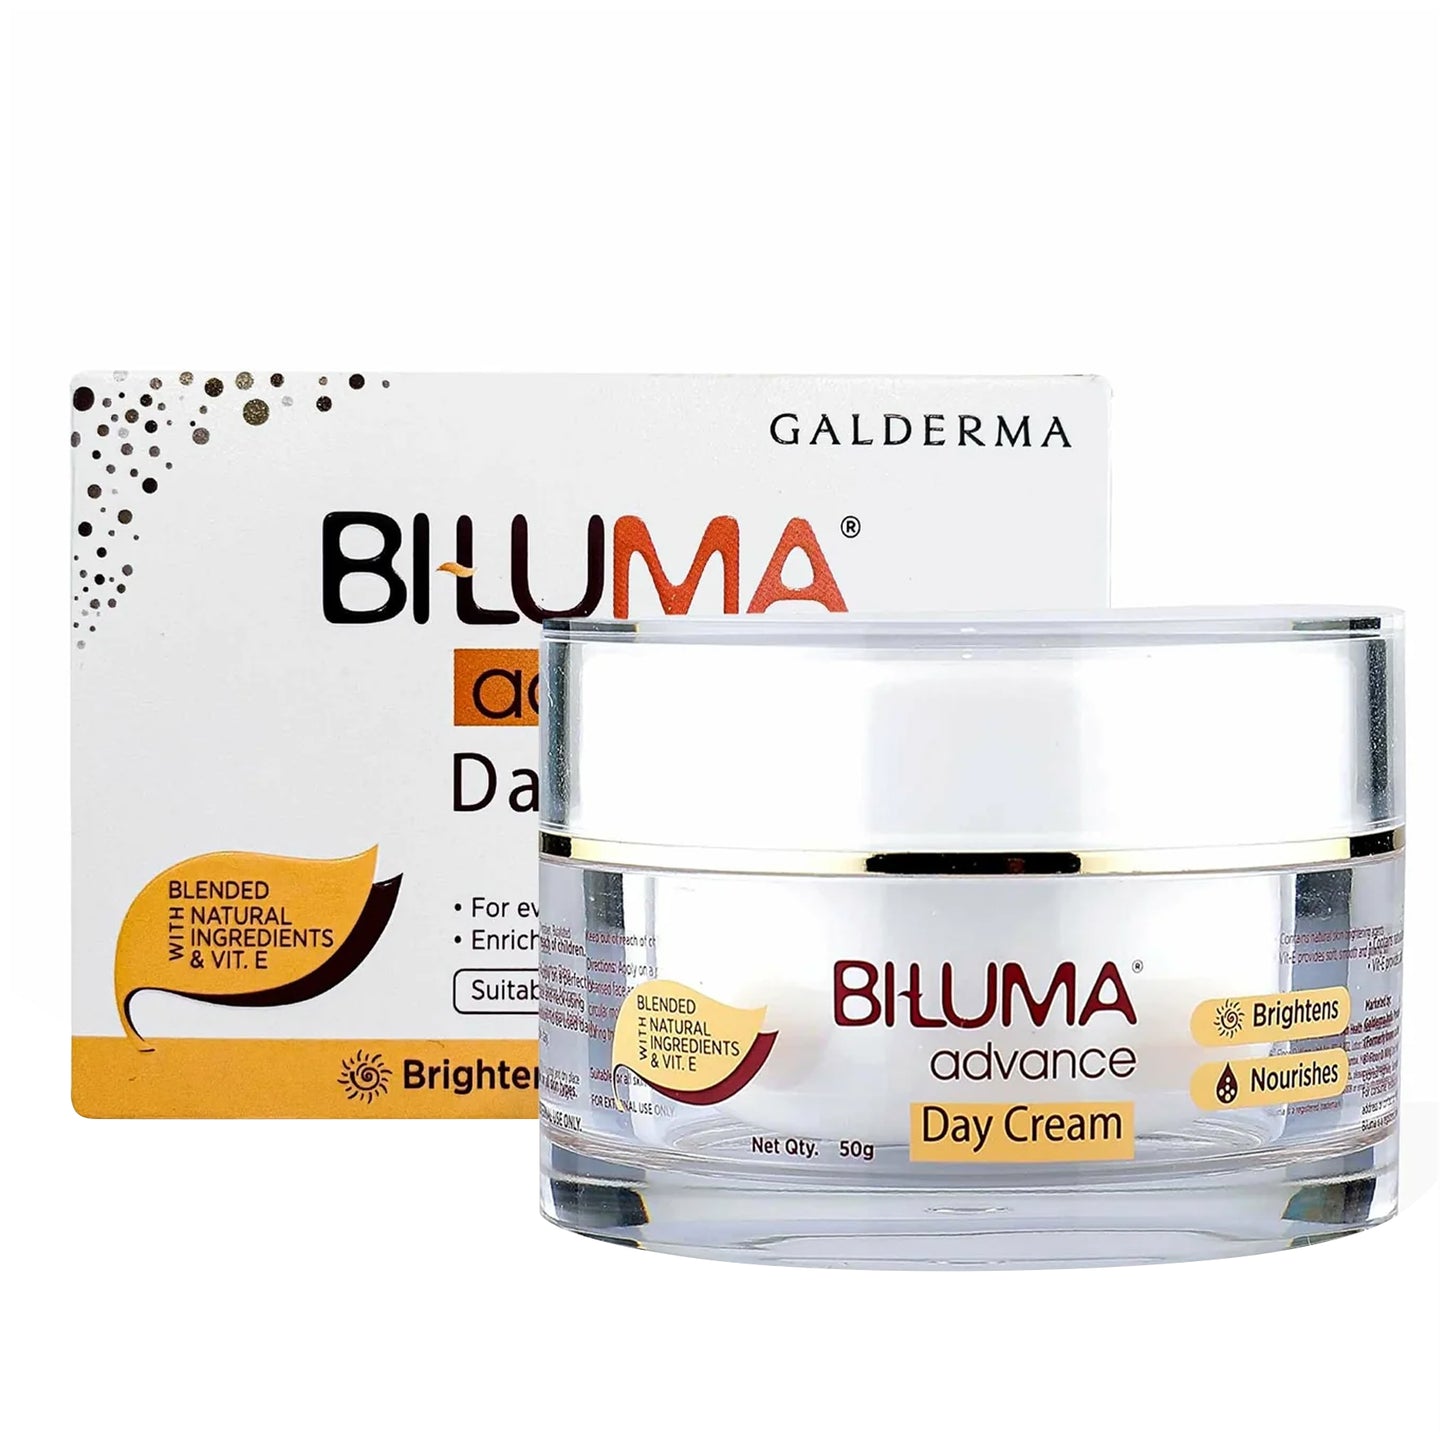 Biluma Advance Day Cream,50gm